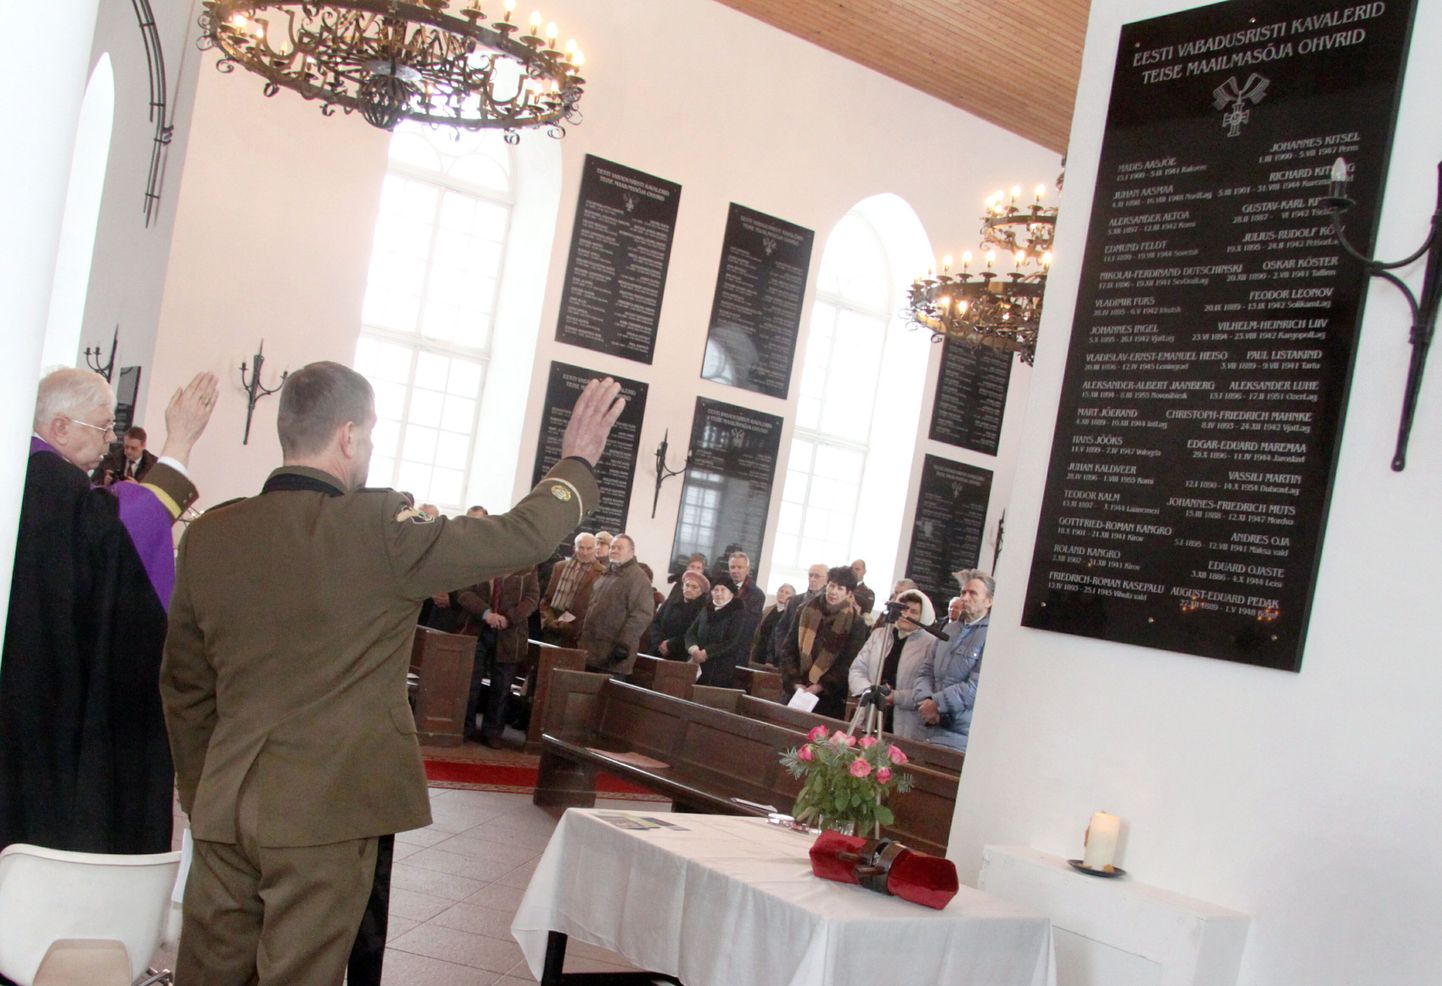 Eesti sõjameeste mälestuskirikus Toris avati mälestustahvel Teise maailmasõja ohvriks langenud Eesti Vabadusristi kavaleridele.